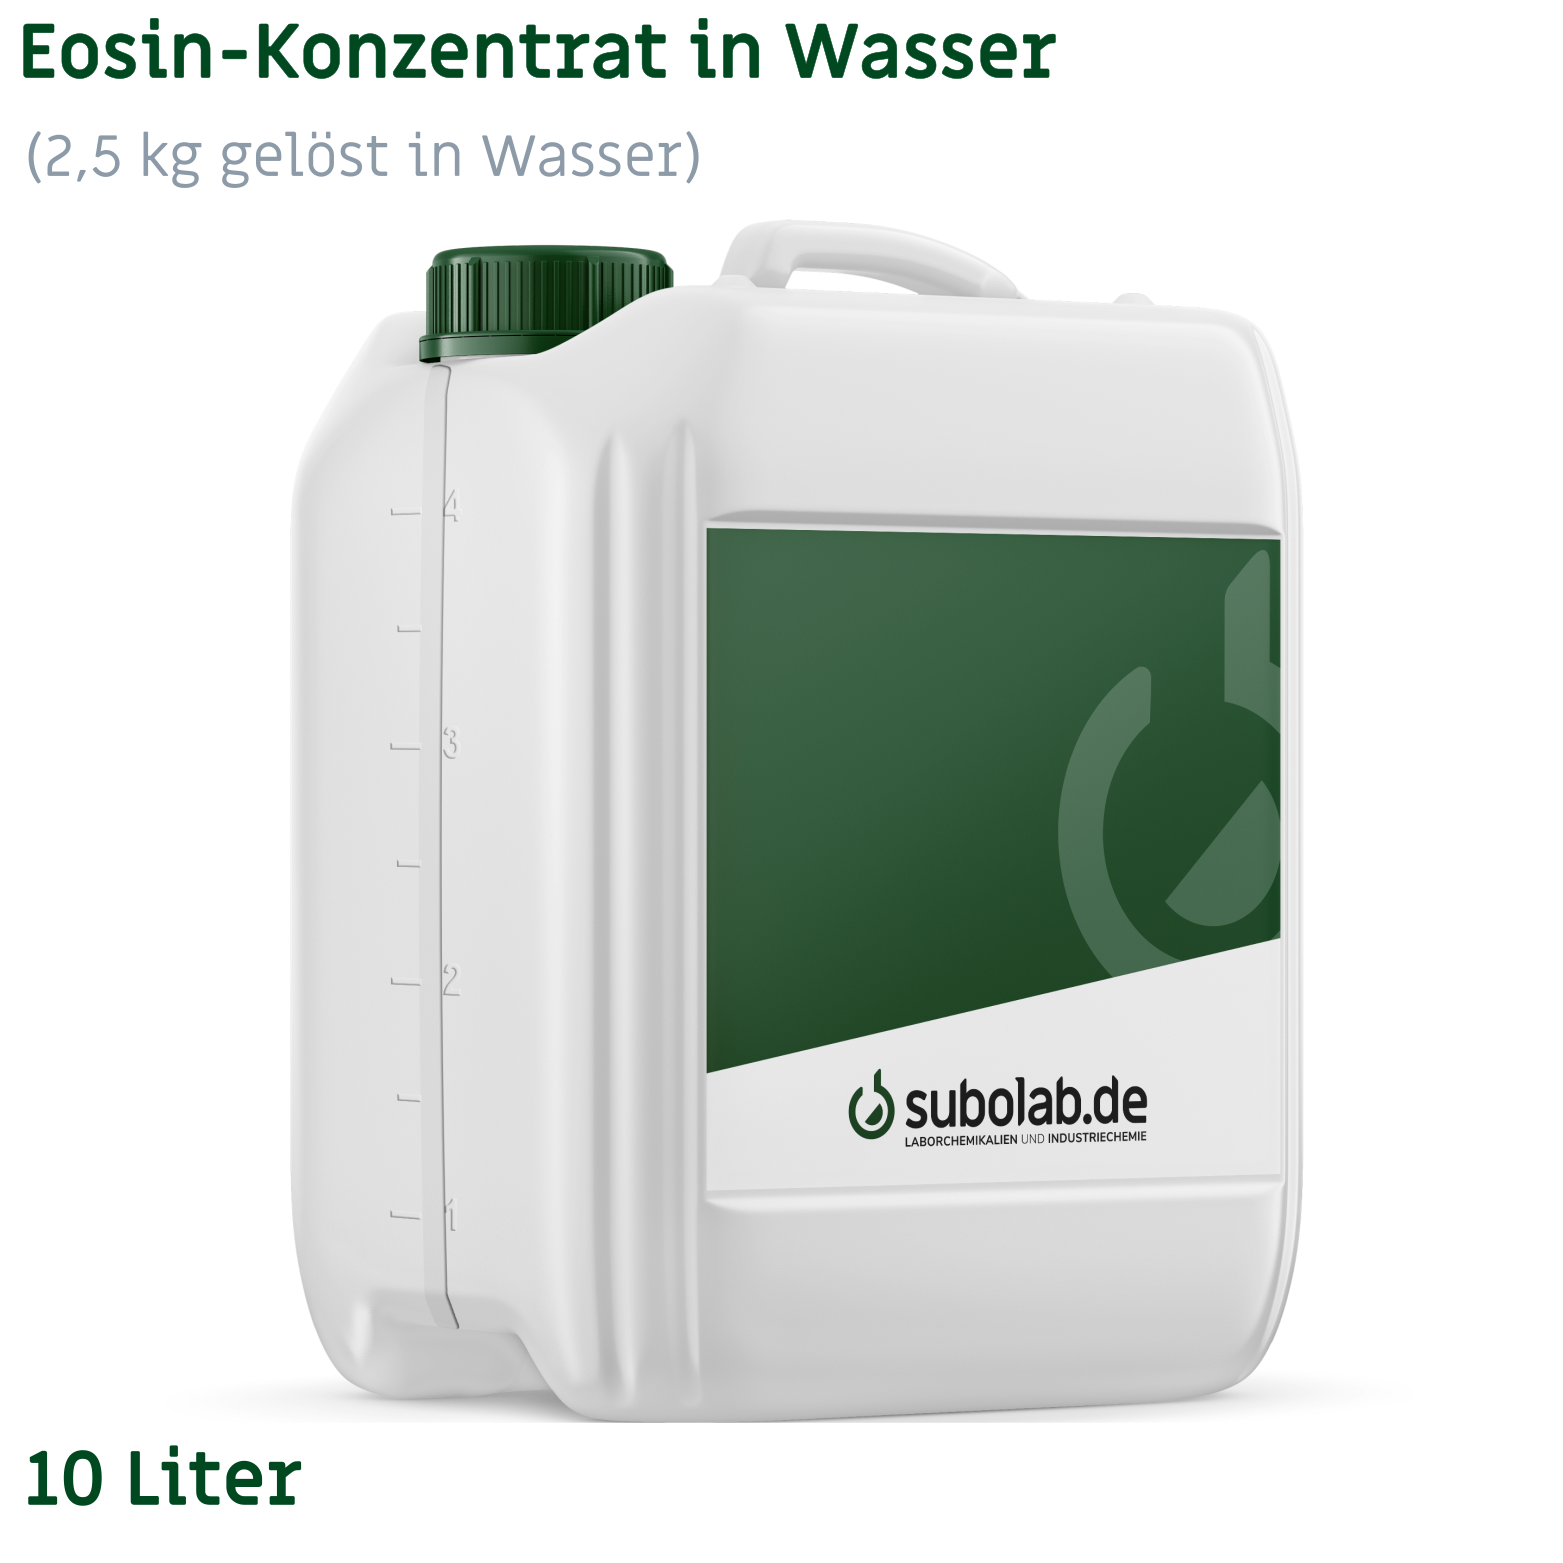 Bild von Eosin-Konzentrat in Wasser (2,5 kg gelöst in Wasser) (10 Liter)